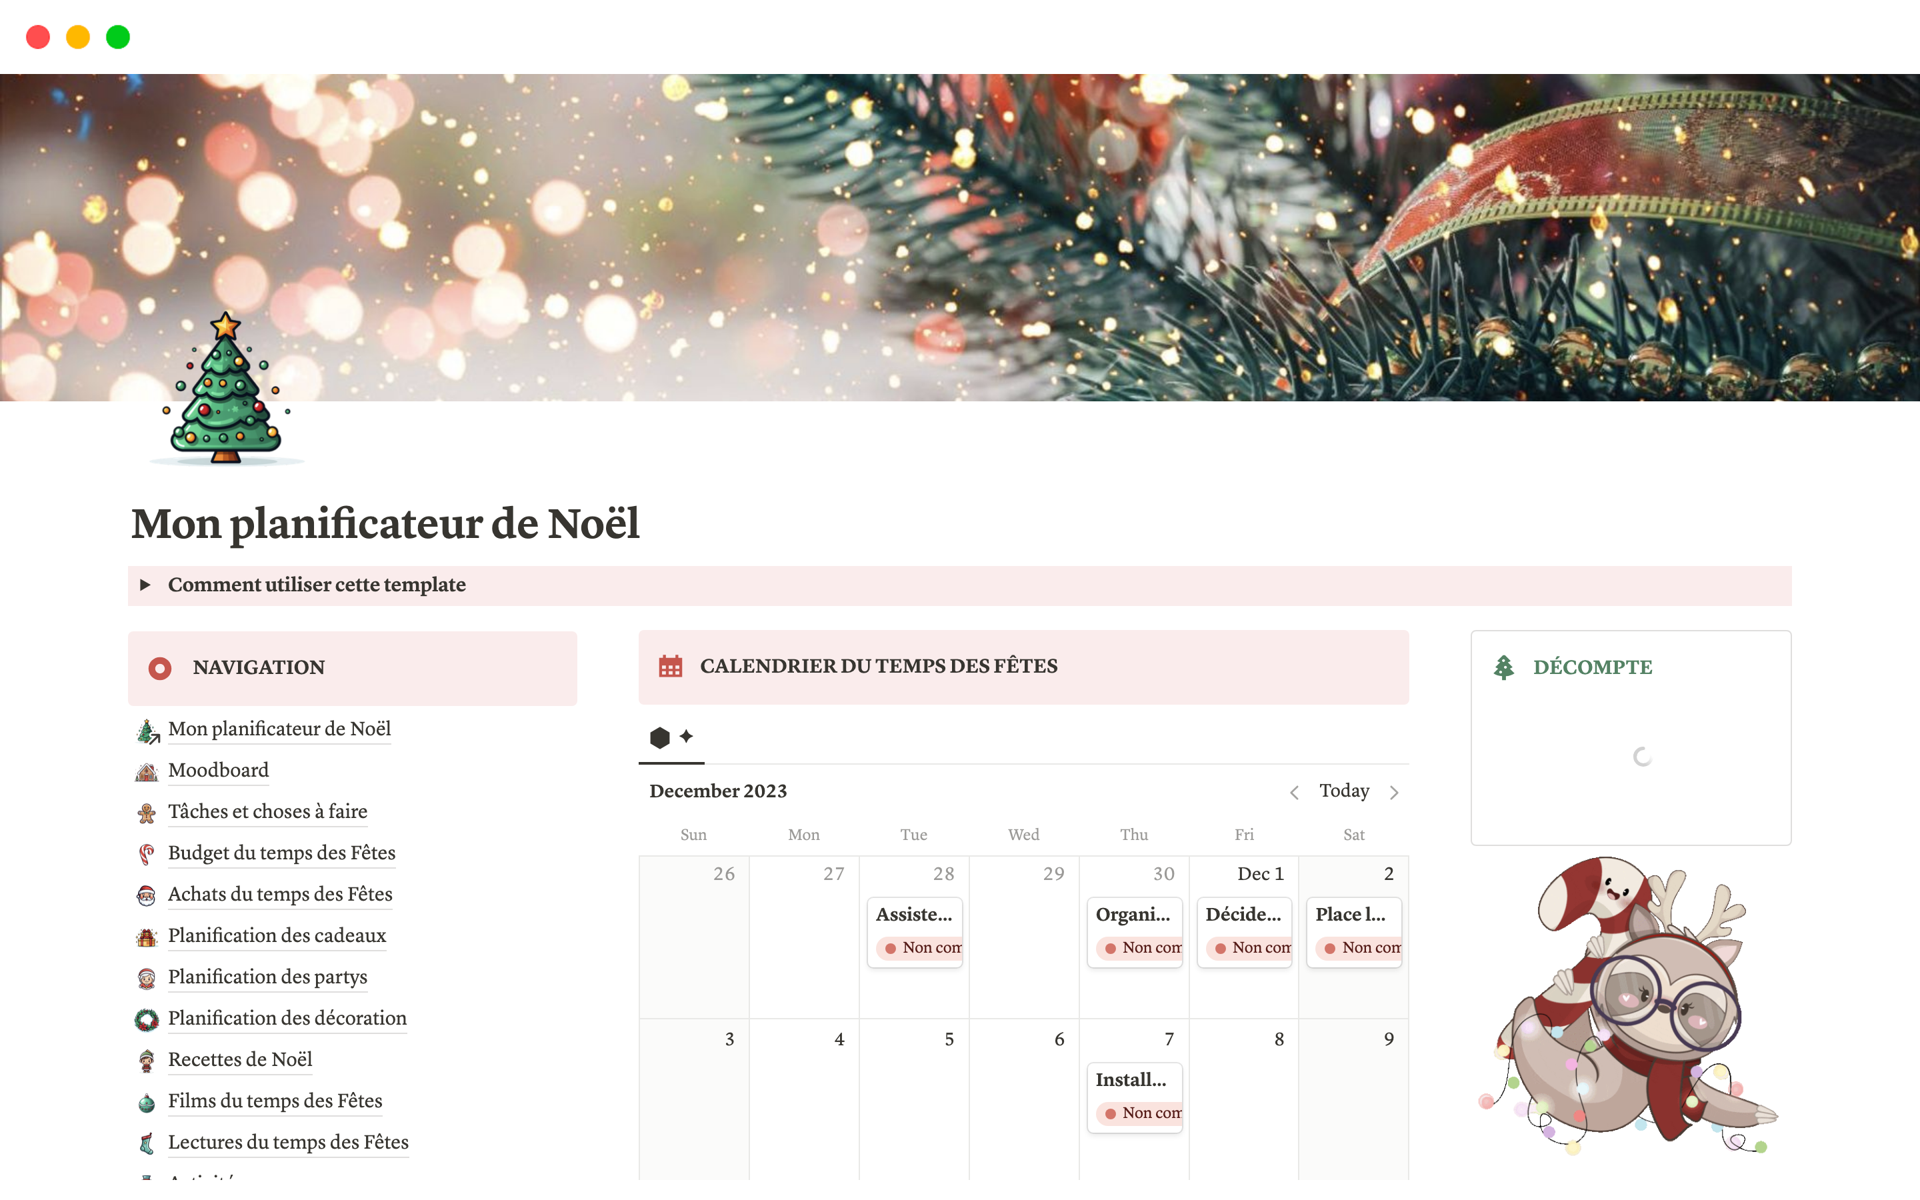 A template preview for Mon planificateur de Noël